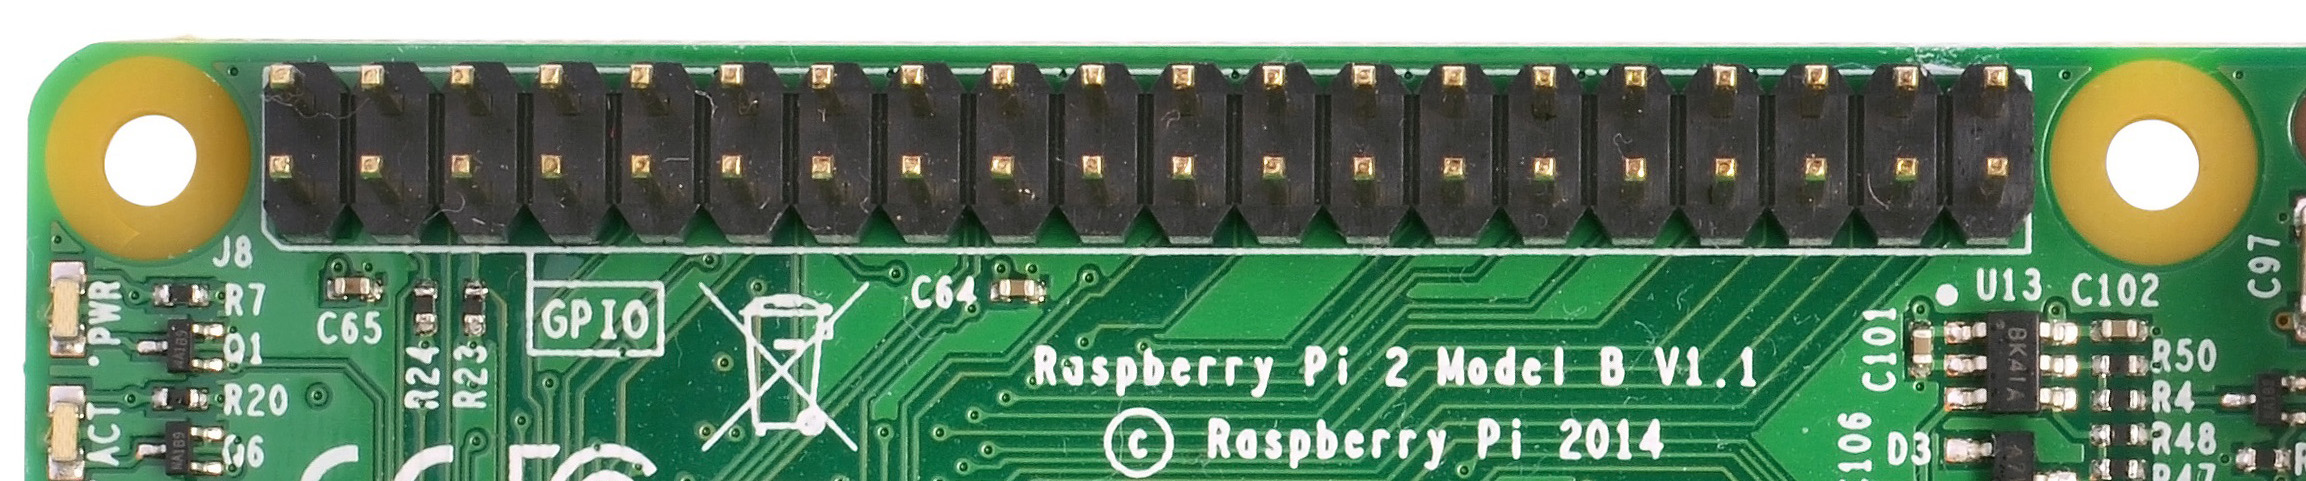 flirc raspberry pi interferes gpio